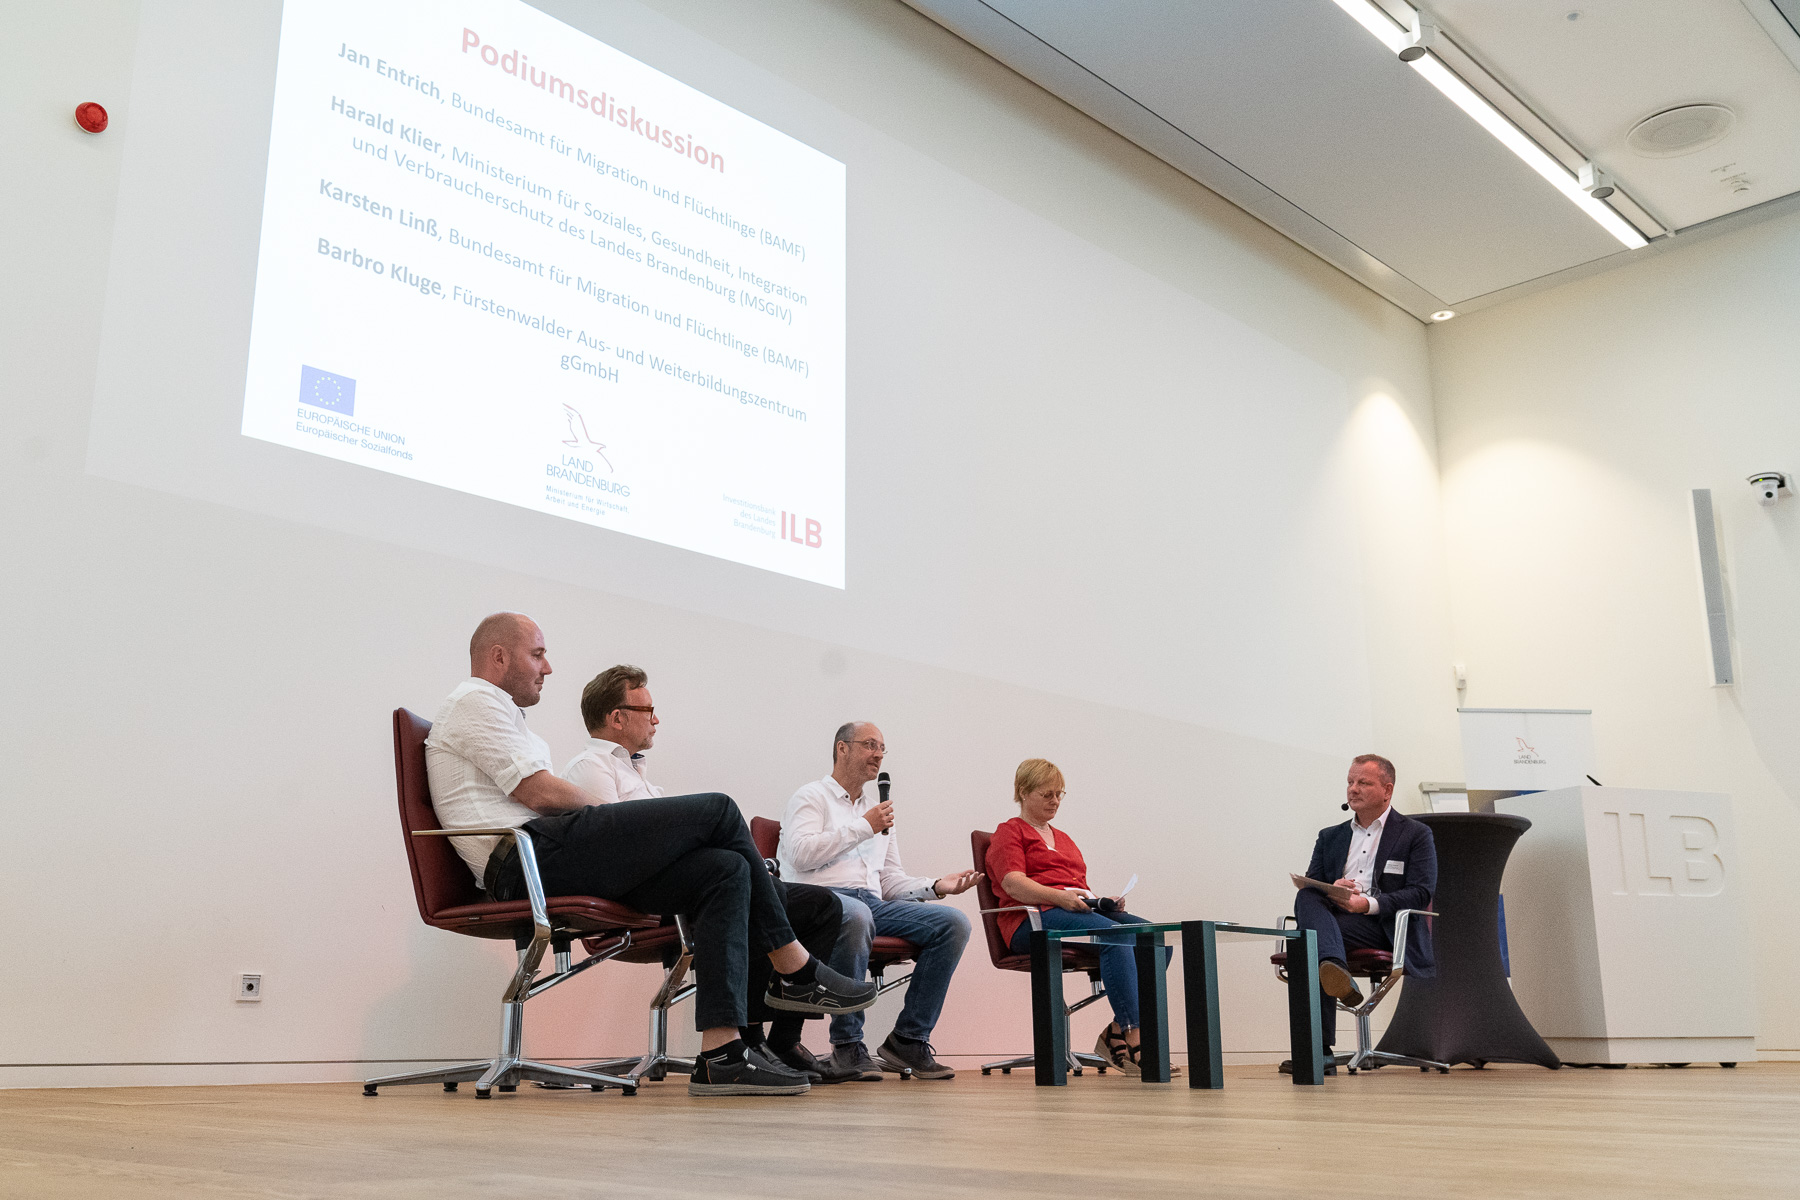 Bild: Bild zeigt Podiumsdiskussion, aufgenommen links neben der Bühne. Auf dem Podium von links: Jan Entrich (BAMF), Harald Klier (MSGIV), Karsten Linß (BAMF), Barbro Kluge (FAWZ) und Dr. Matthias Kirbach (Moderator)..